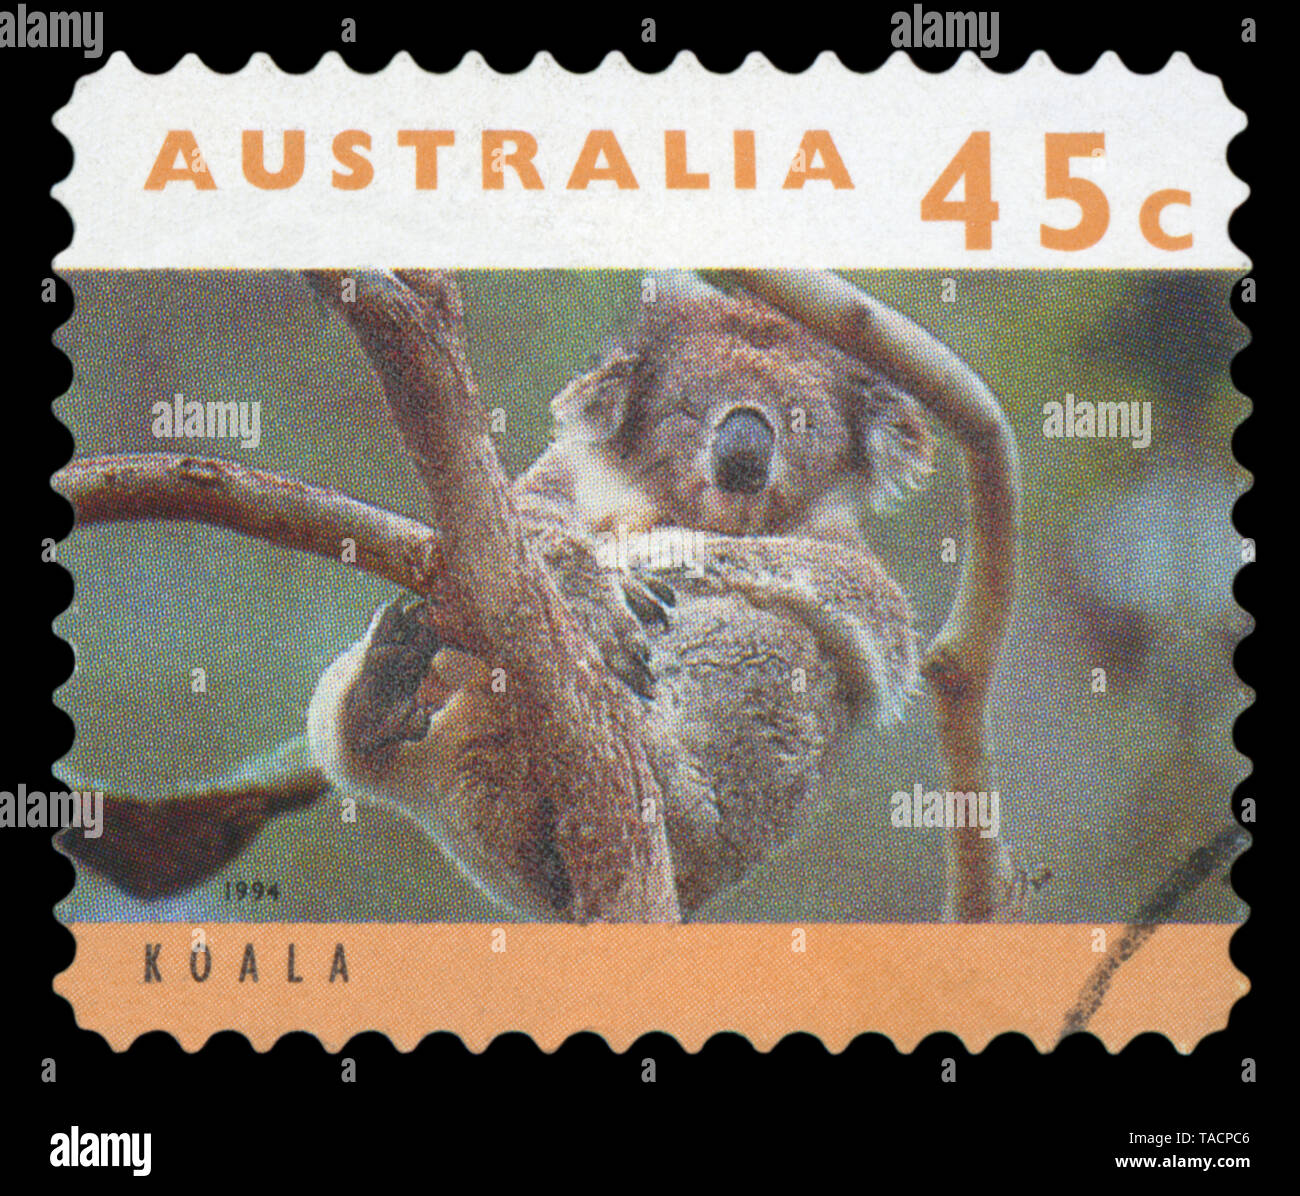 Australien - CIRCA 1994: Eine gebrauchte Briefmarke aus Australien, ein Bild eines Koalas, circa 1994. Stockfoto